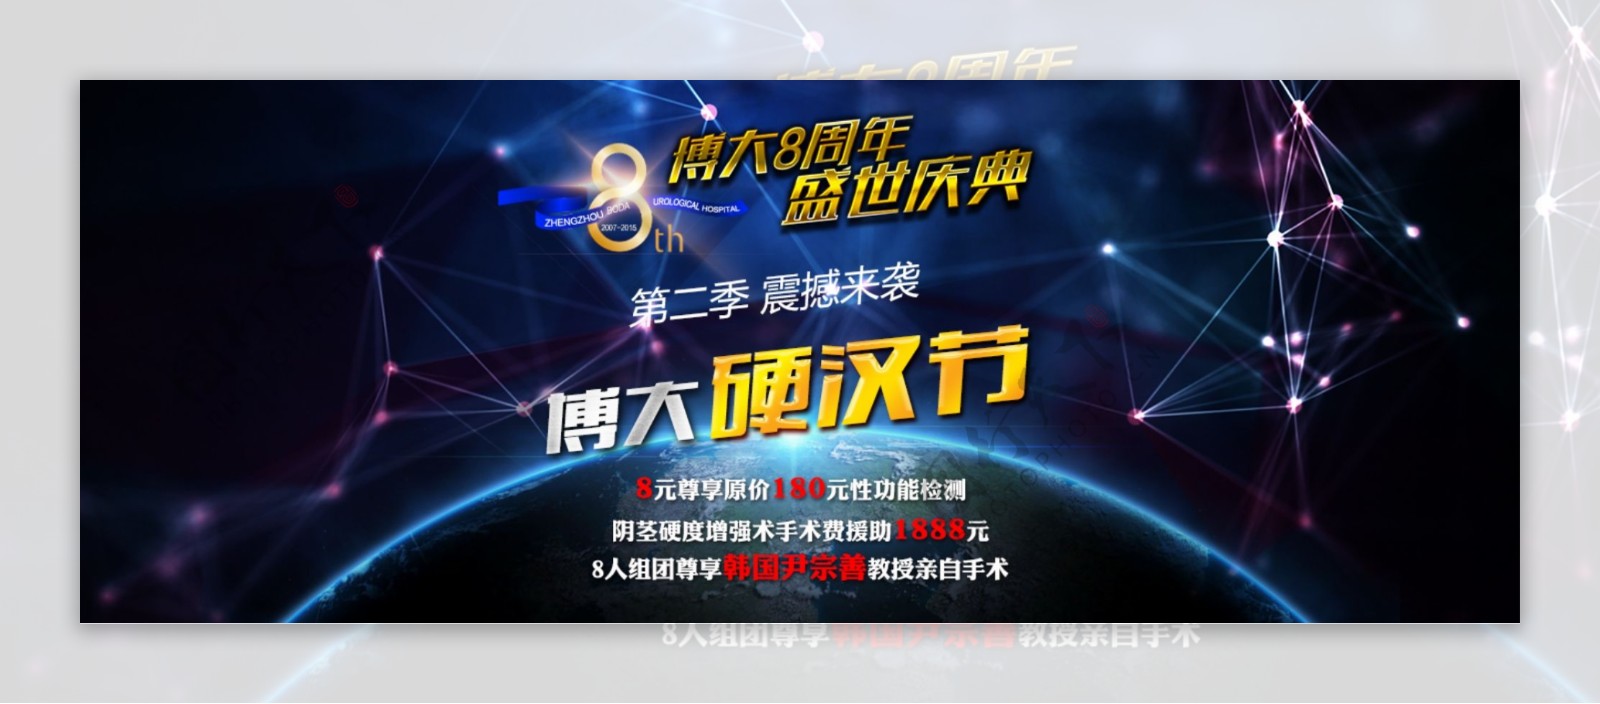 8周年科技蓝硬汉节banner